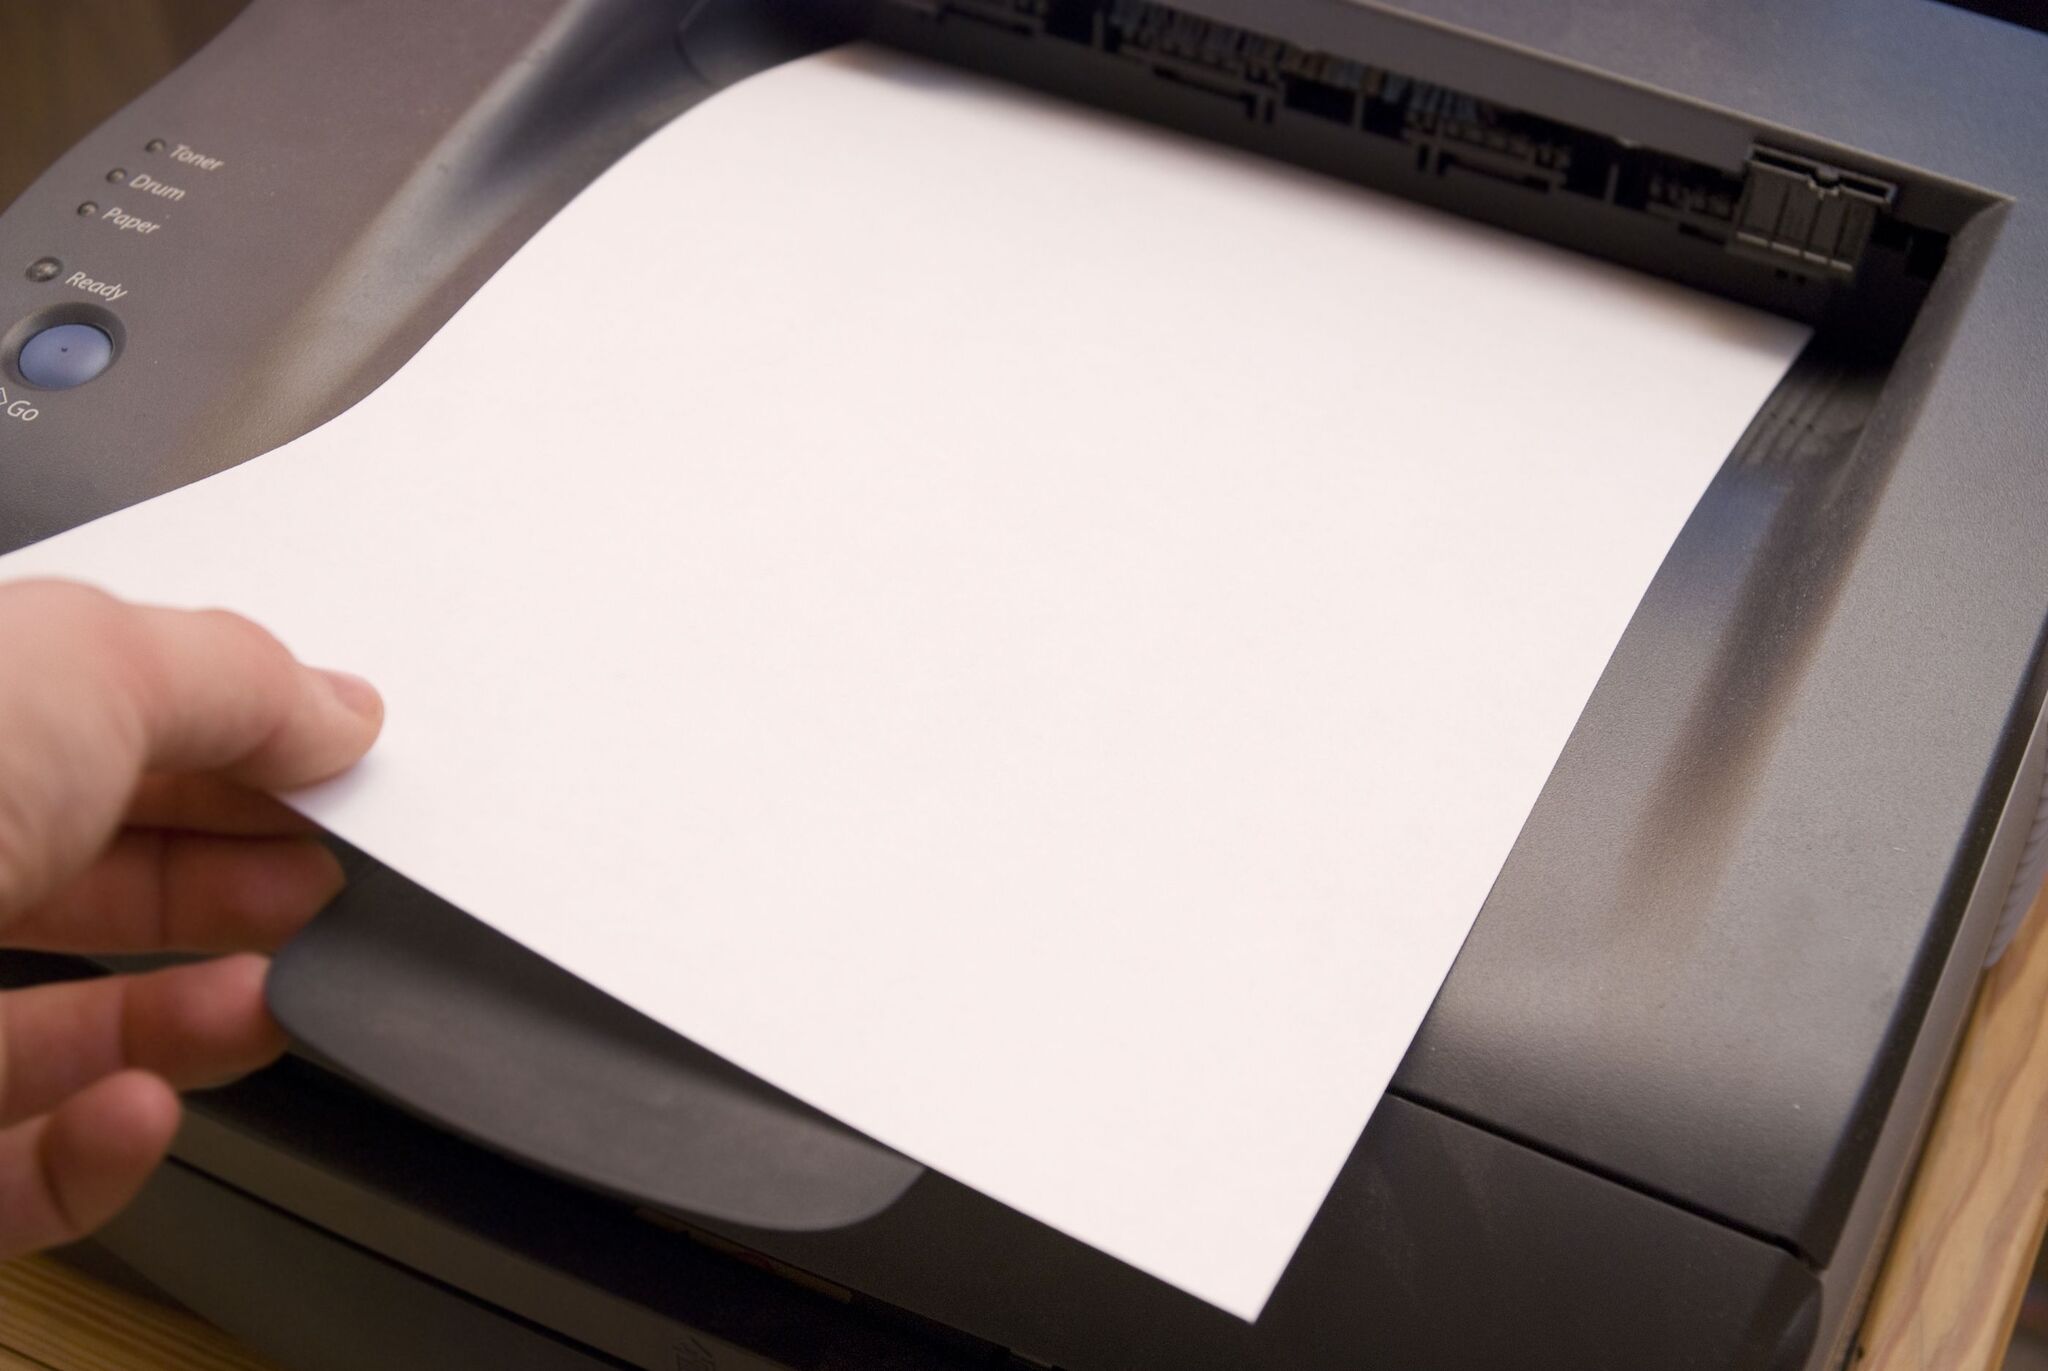 Бумага для печати фотографий на лазерном принтере